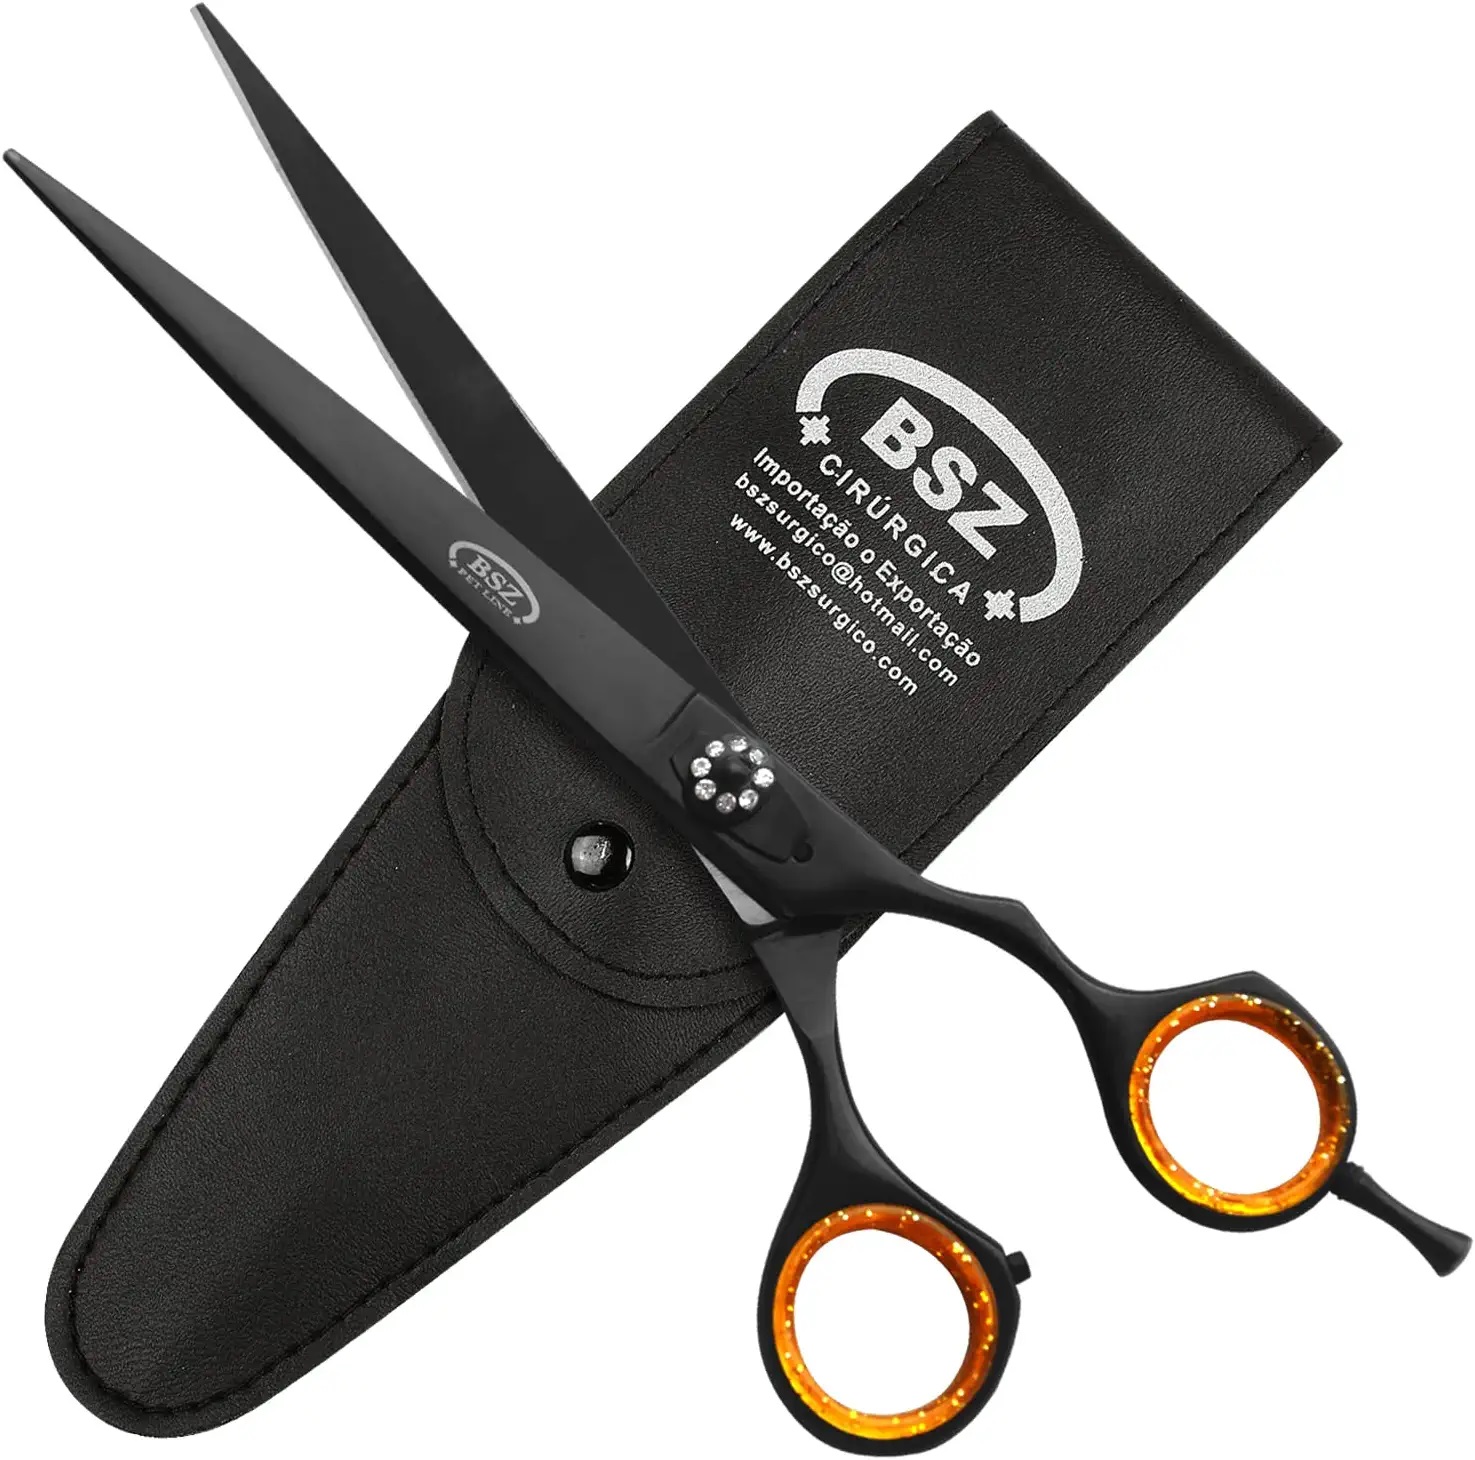 Pet Grooming Scissors  Grooming Scissors Direct